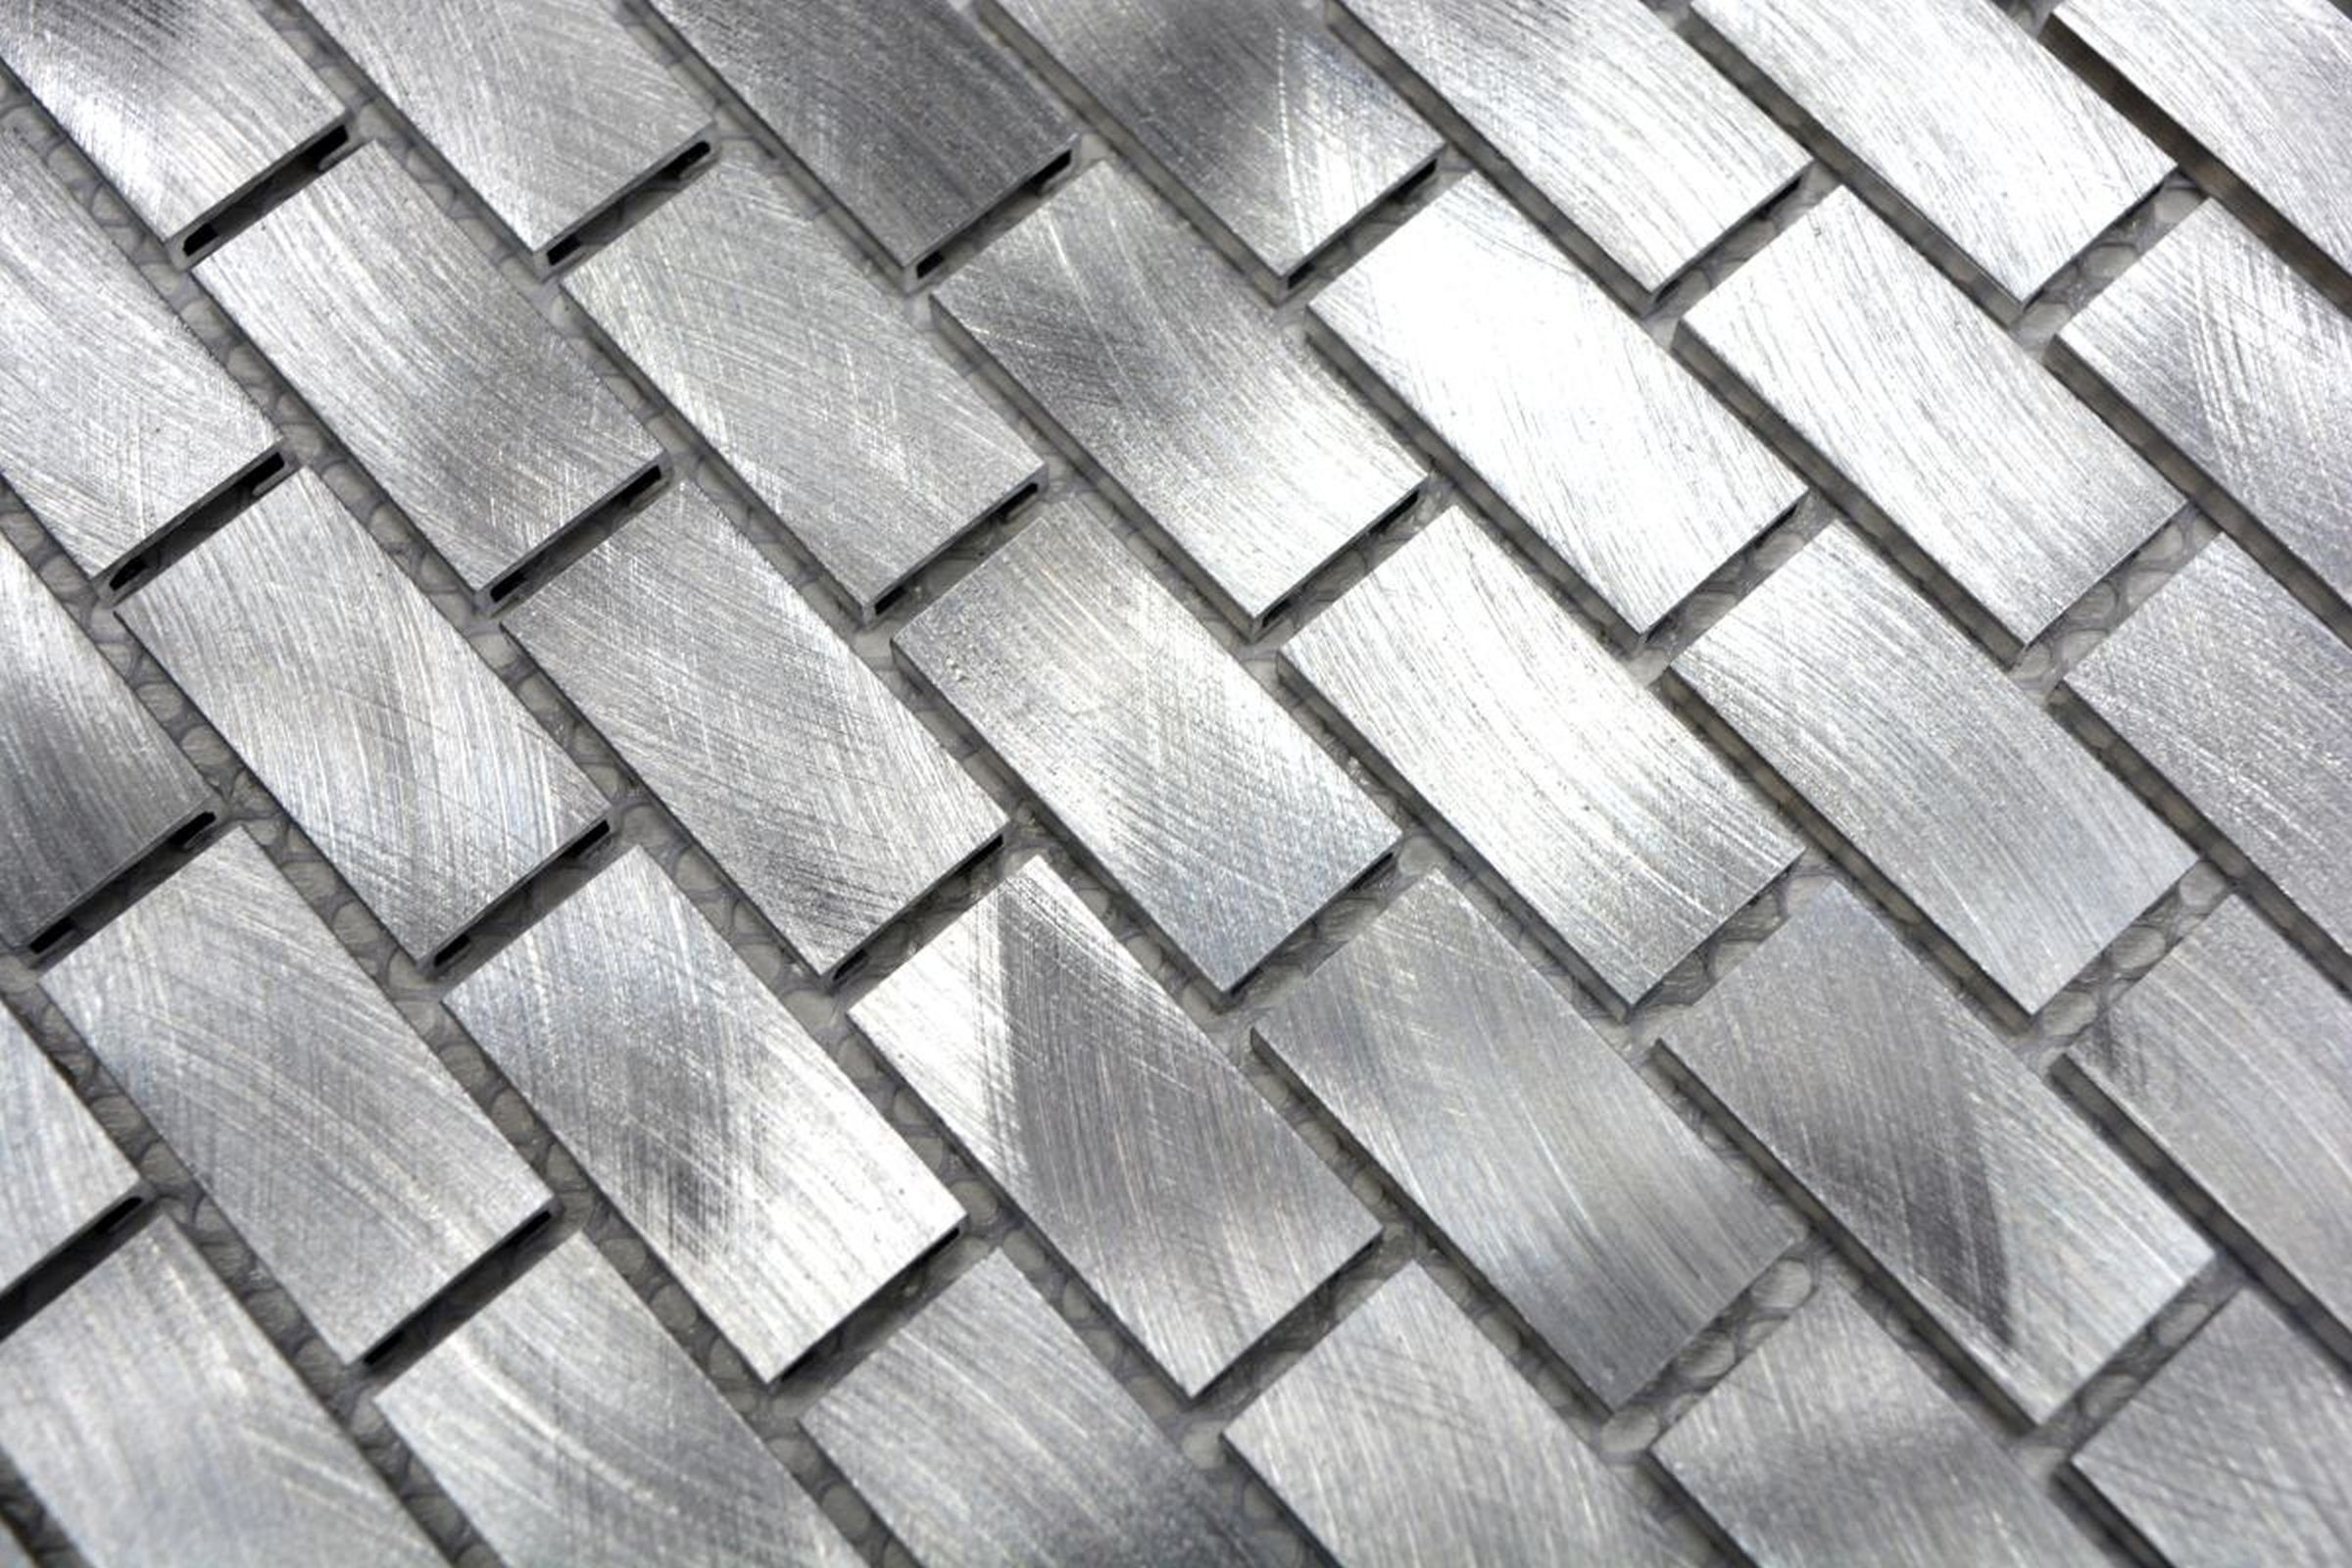 Küchenwand Fliese Mosaik Mosani Aluminium Fliesenspiegel silber Mosaikfliesen Brick